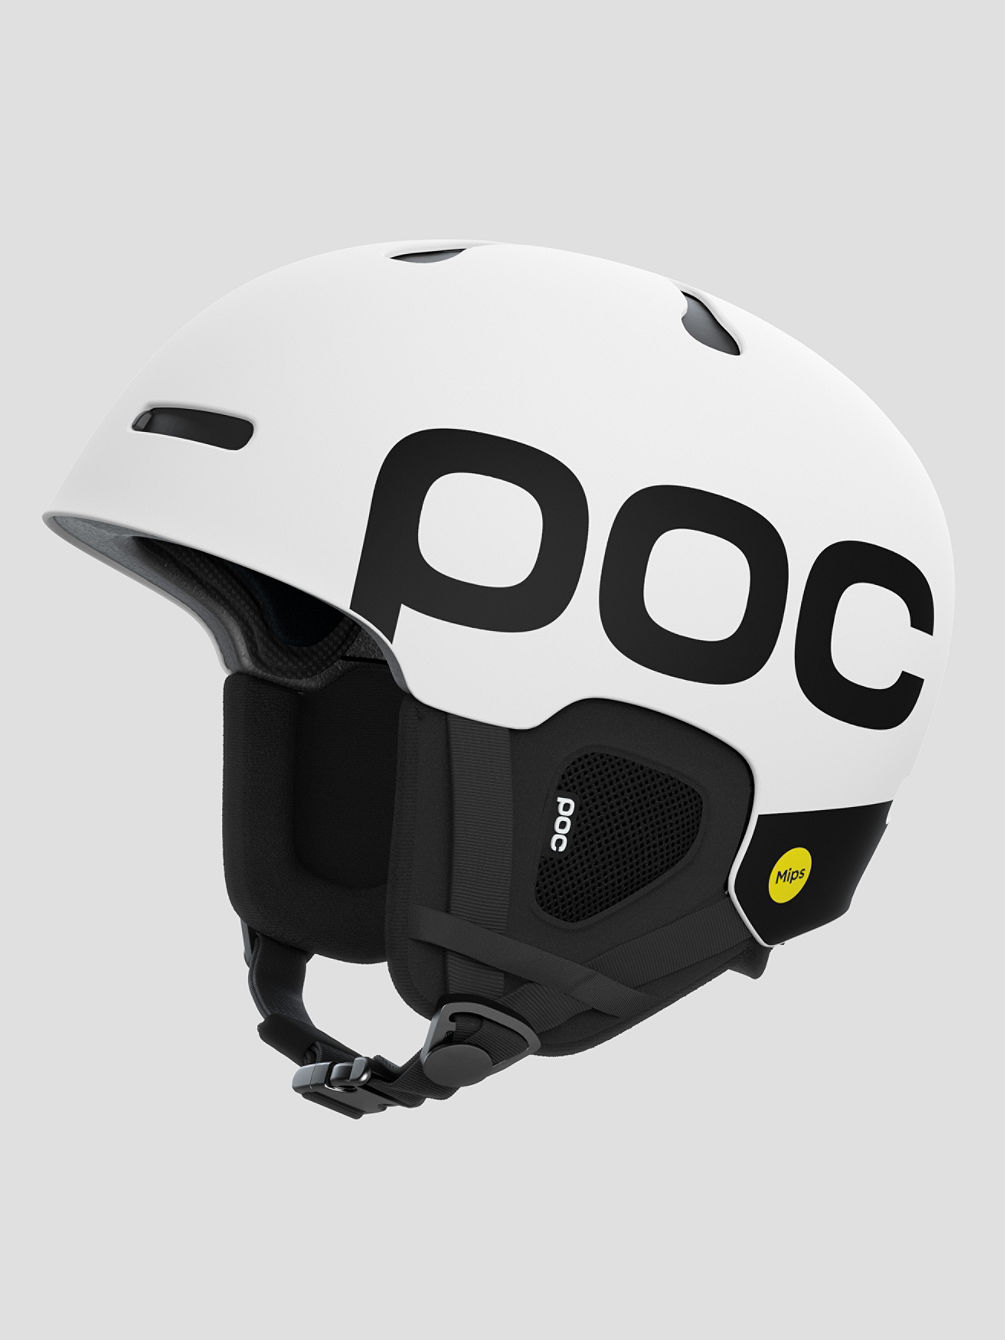 Auric Cut BC MIPS Helmet